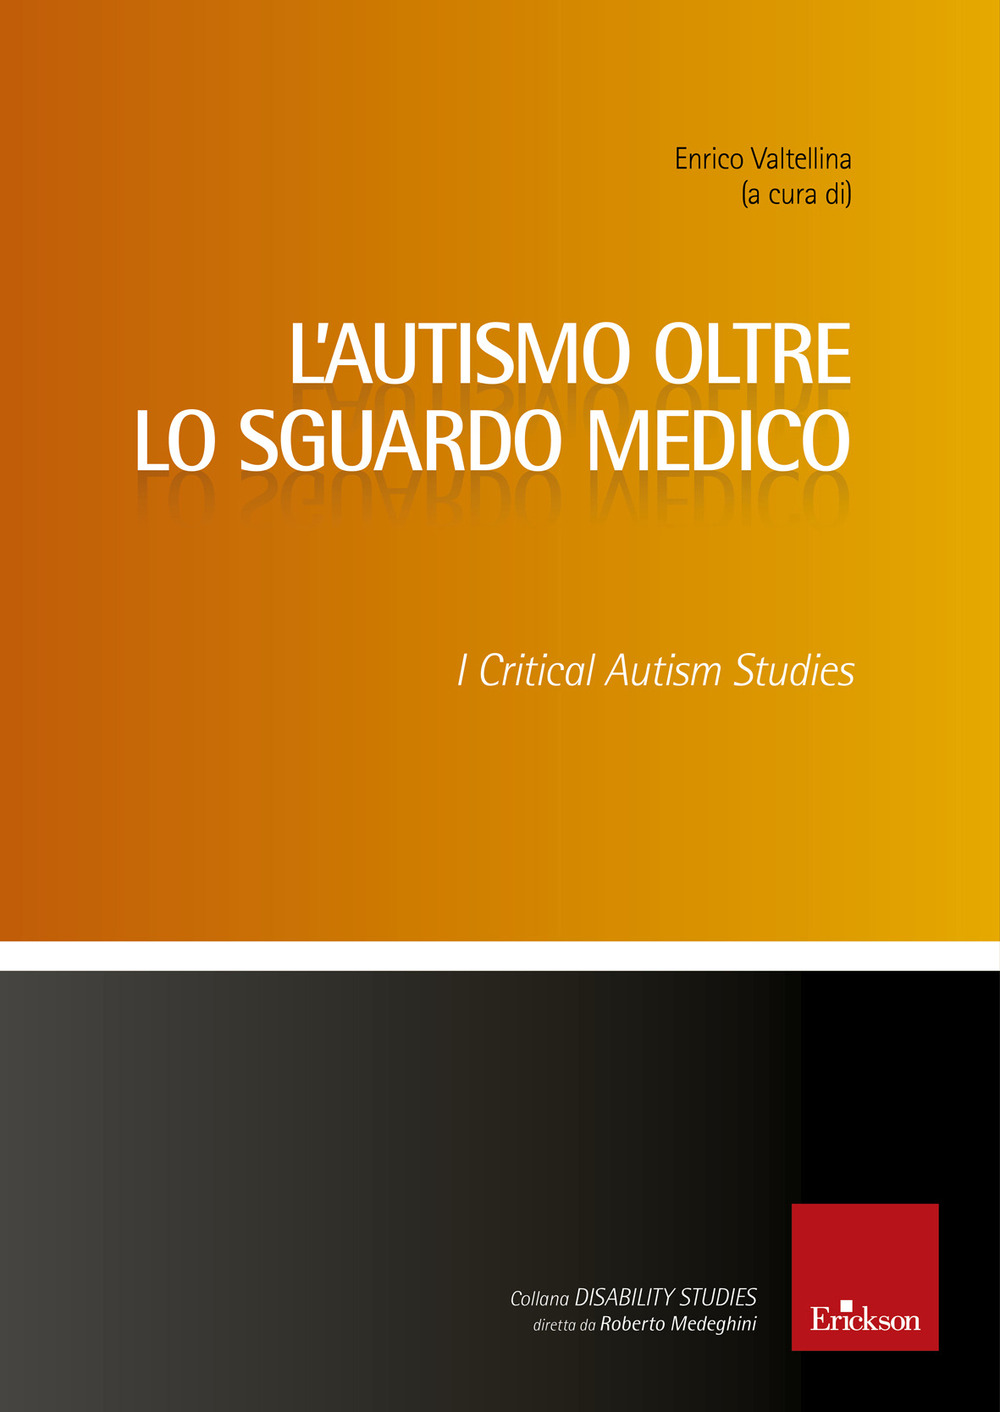 Libri Enrico Valtellina - L' Autismo Oltre Lo Sguardo Medico. Critical Autism Studies NUOVO SIGILLATO, EDIZIONE DEL 19/03/2020 SUBITO DISPONIBILE